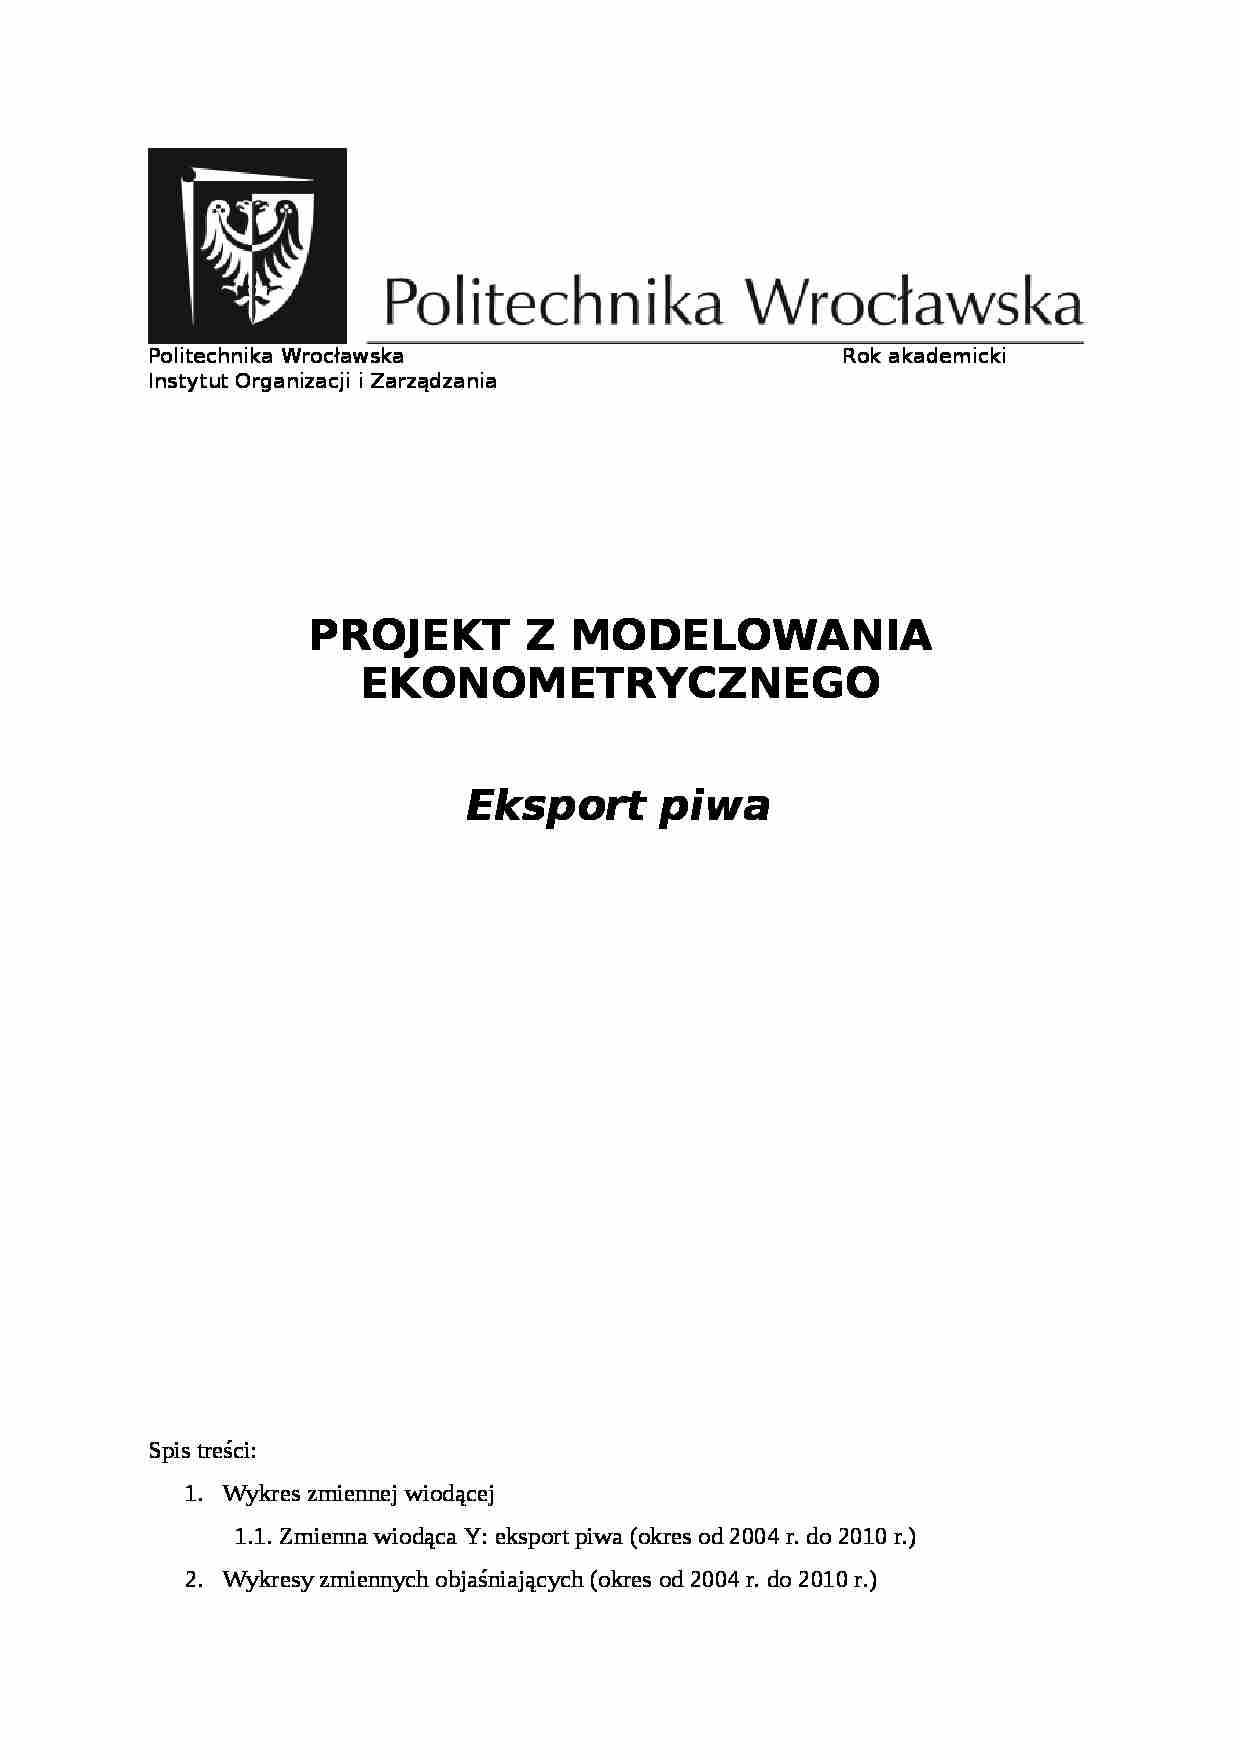 model ekonometryczny eksport piwa - omówienie - strona 1